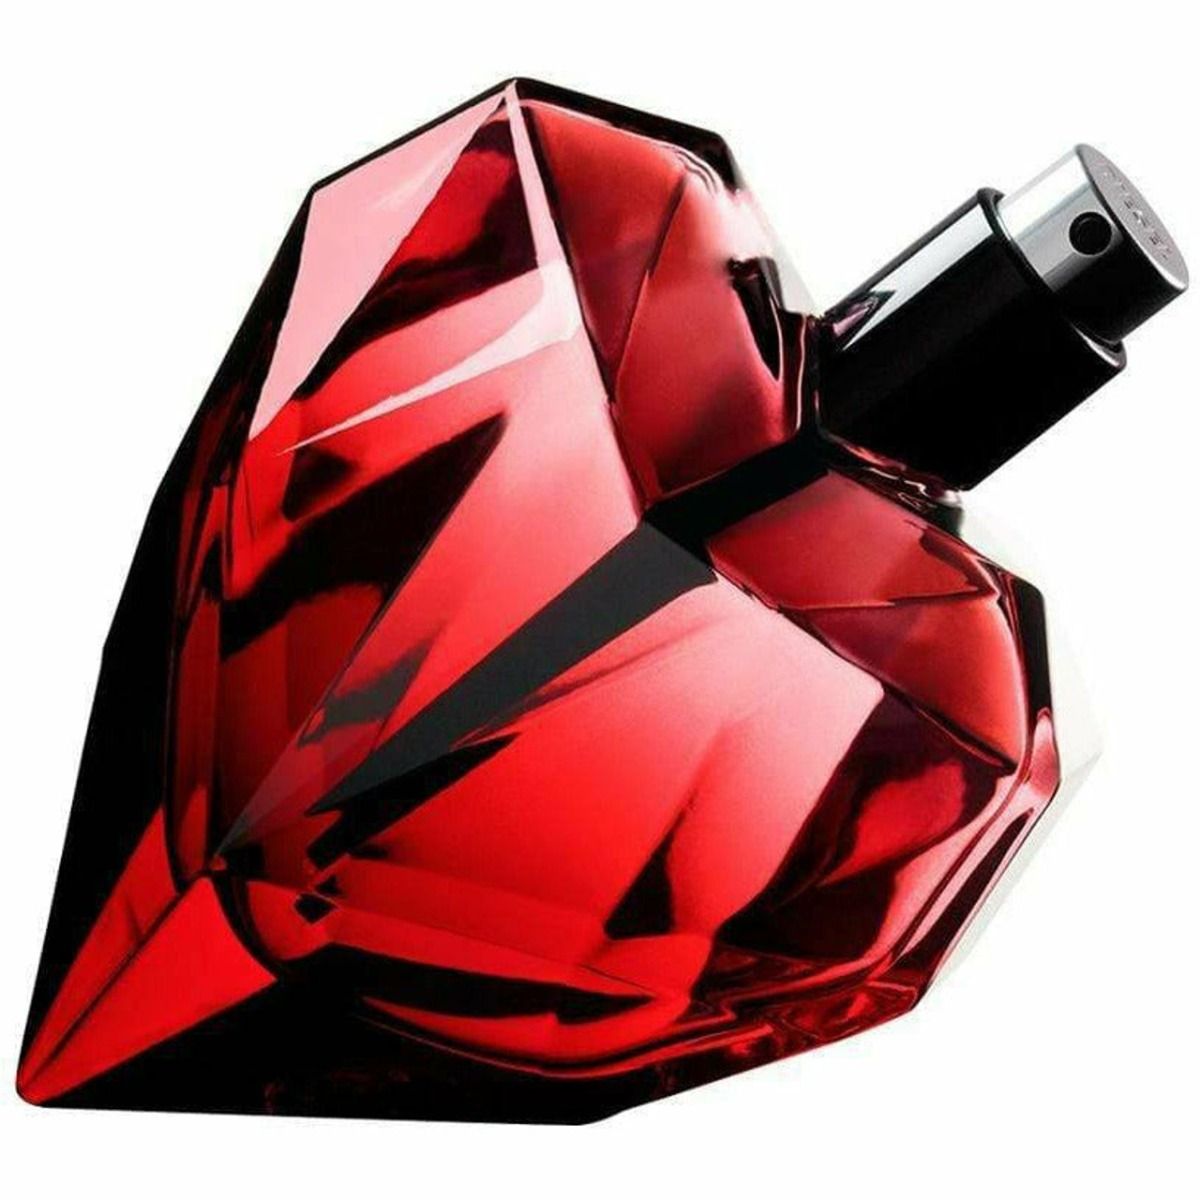 Diesel Loverdose Red Kiss парфюмерная вода для женщин, 50 ml loverdose парфюмерная вода 75мл